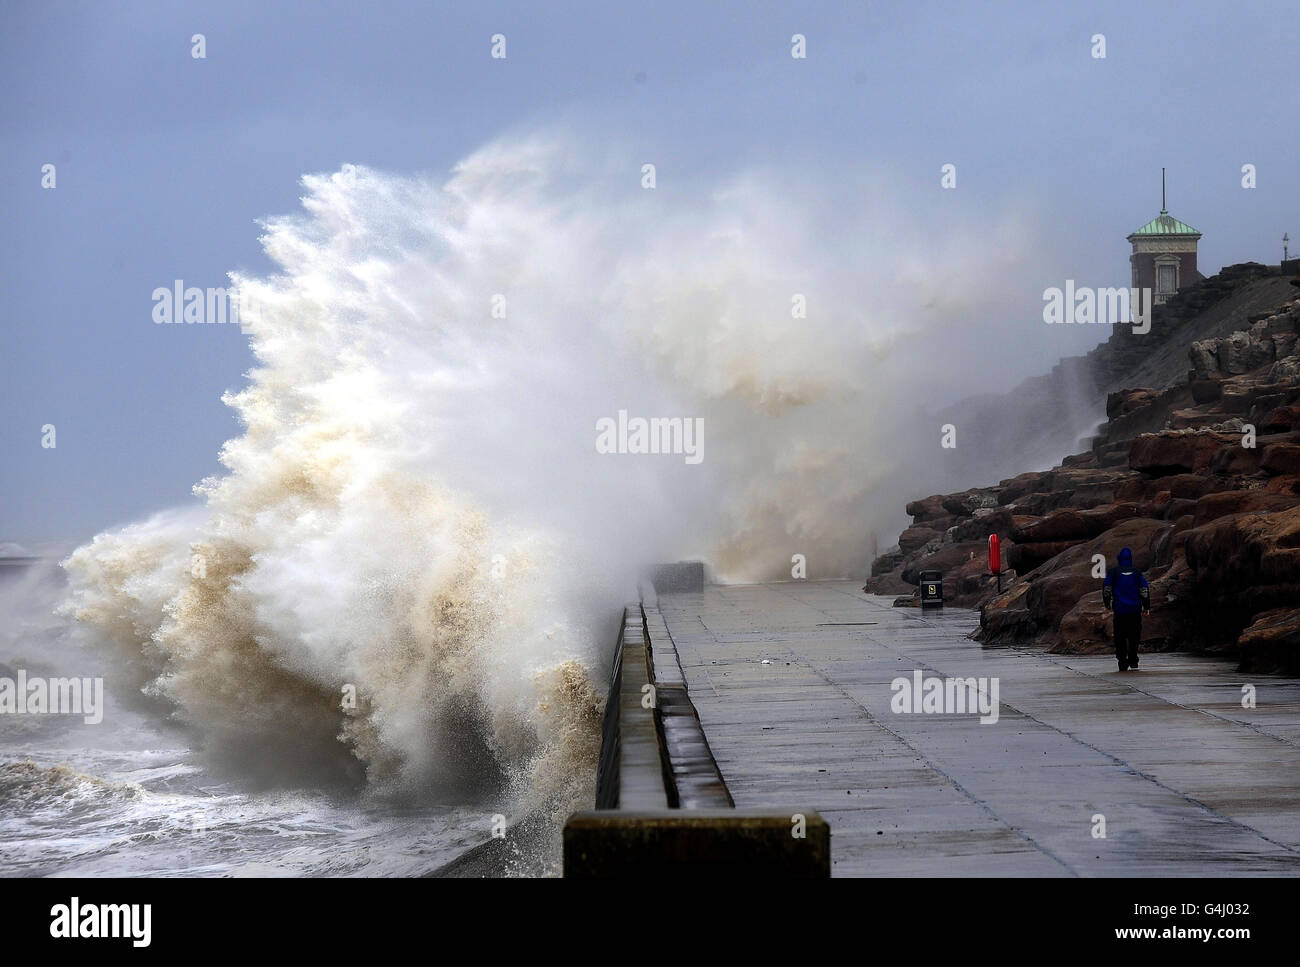 Gales e alte maree spazzano la costa a Blackpool mentre i resti dell'uragano Katia colpiscono le coste britanniche. Foto Stock